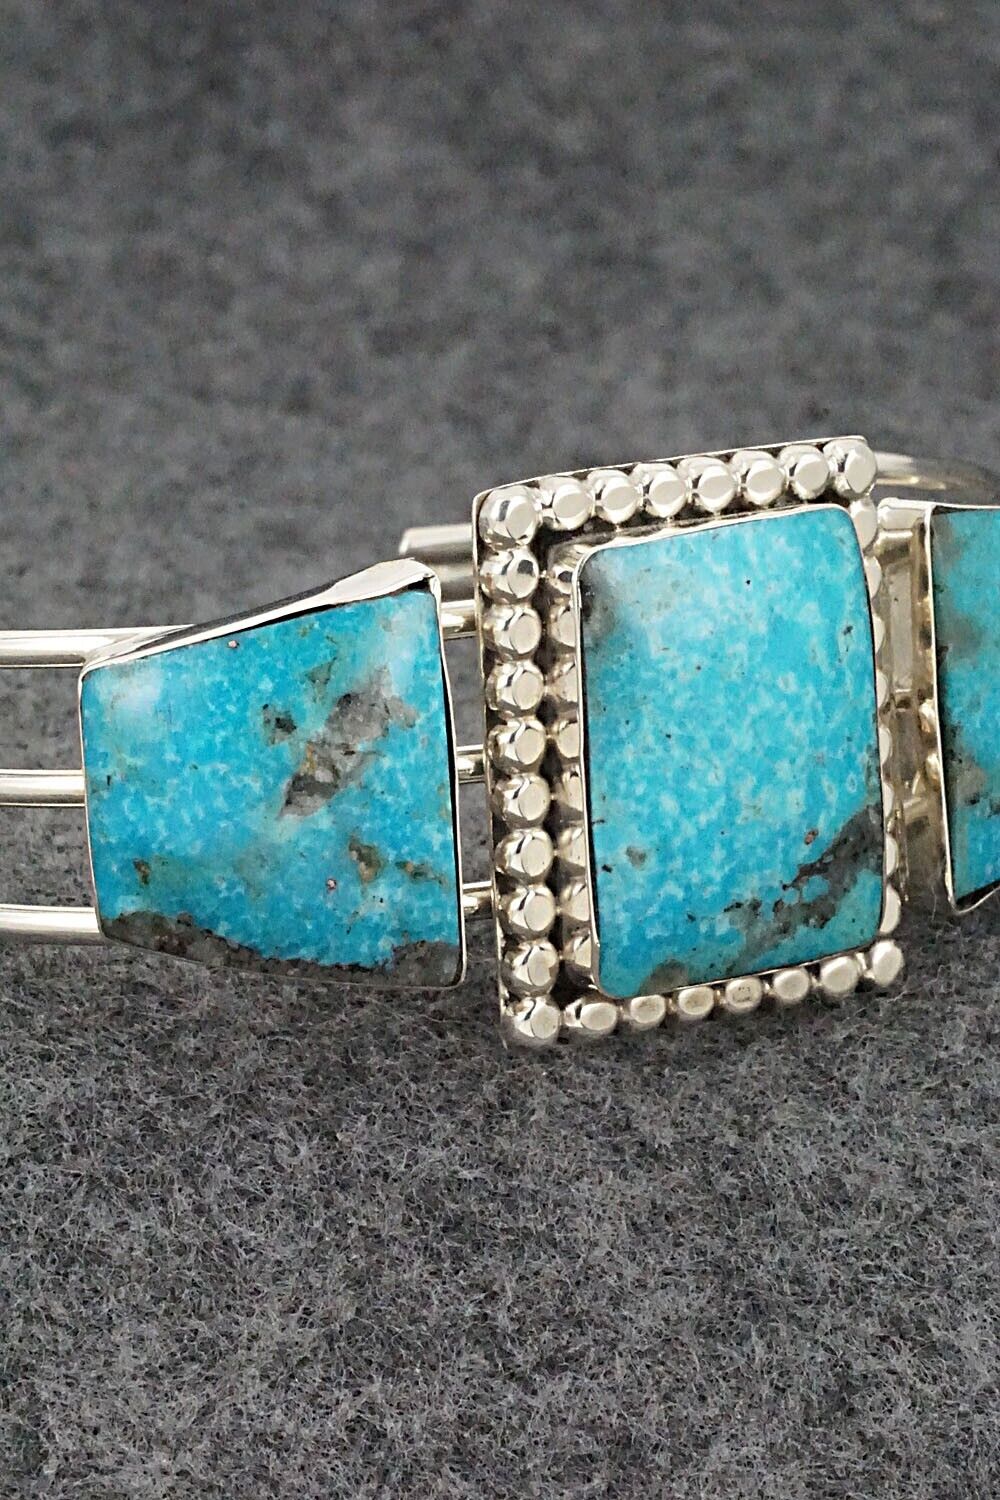 Turquoise & Sterling Silver Bracelet - Irvin Tsosie